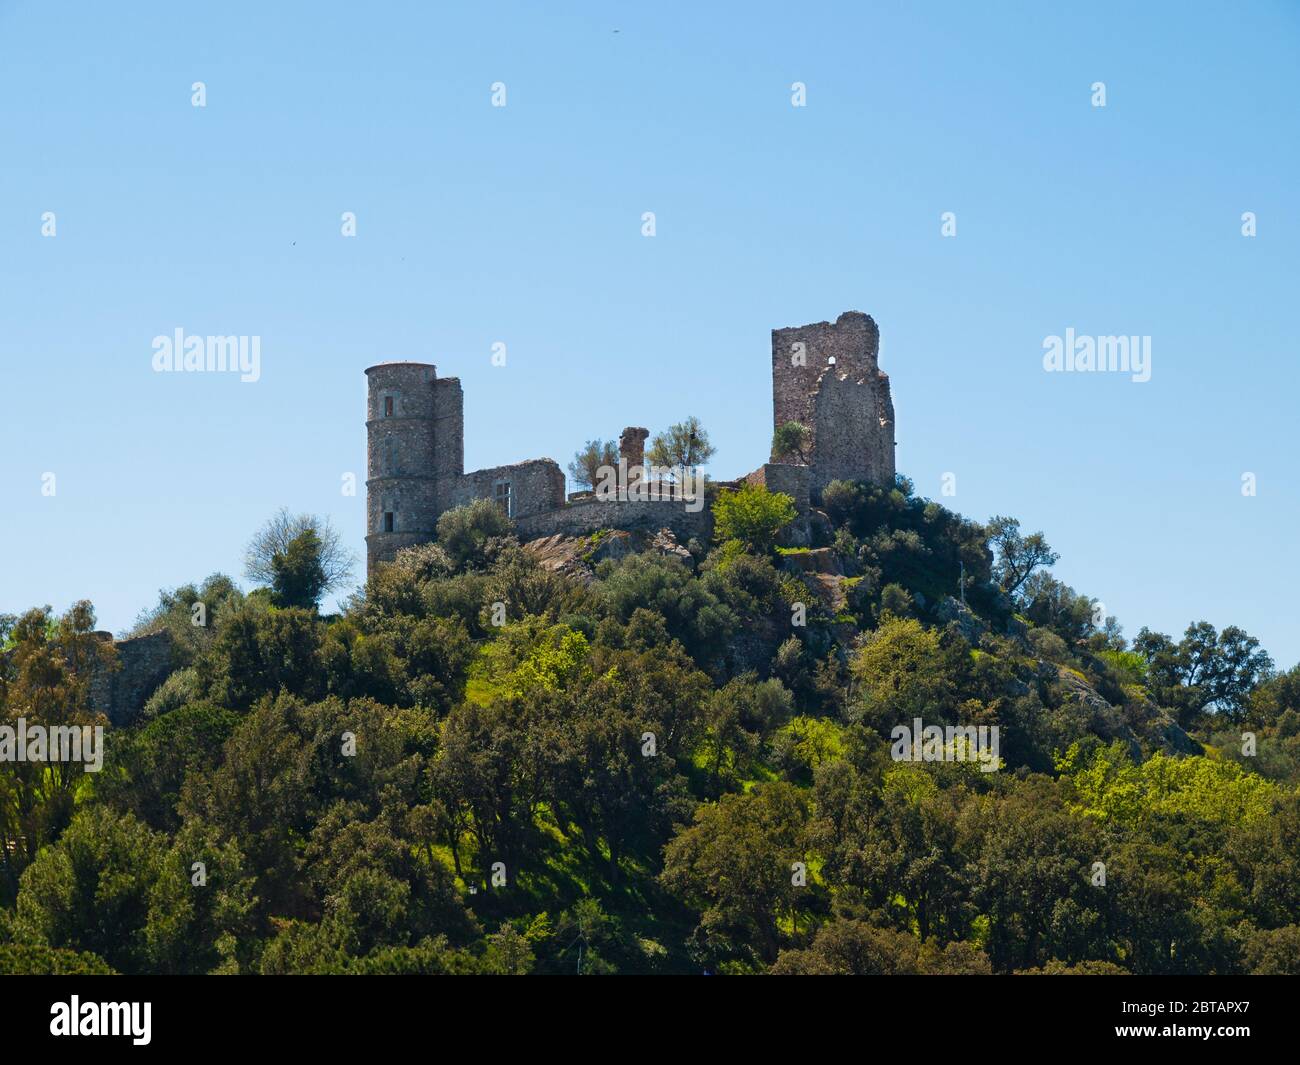 Ruins of the castle Château de Grimaud, Cote d'Azur, Provence, southern France Stock Photo